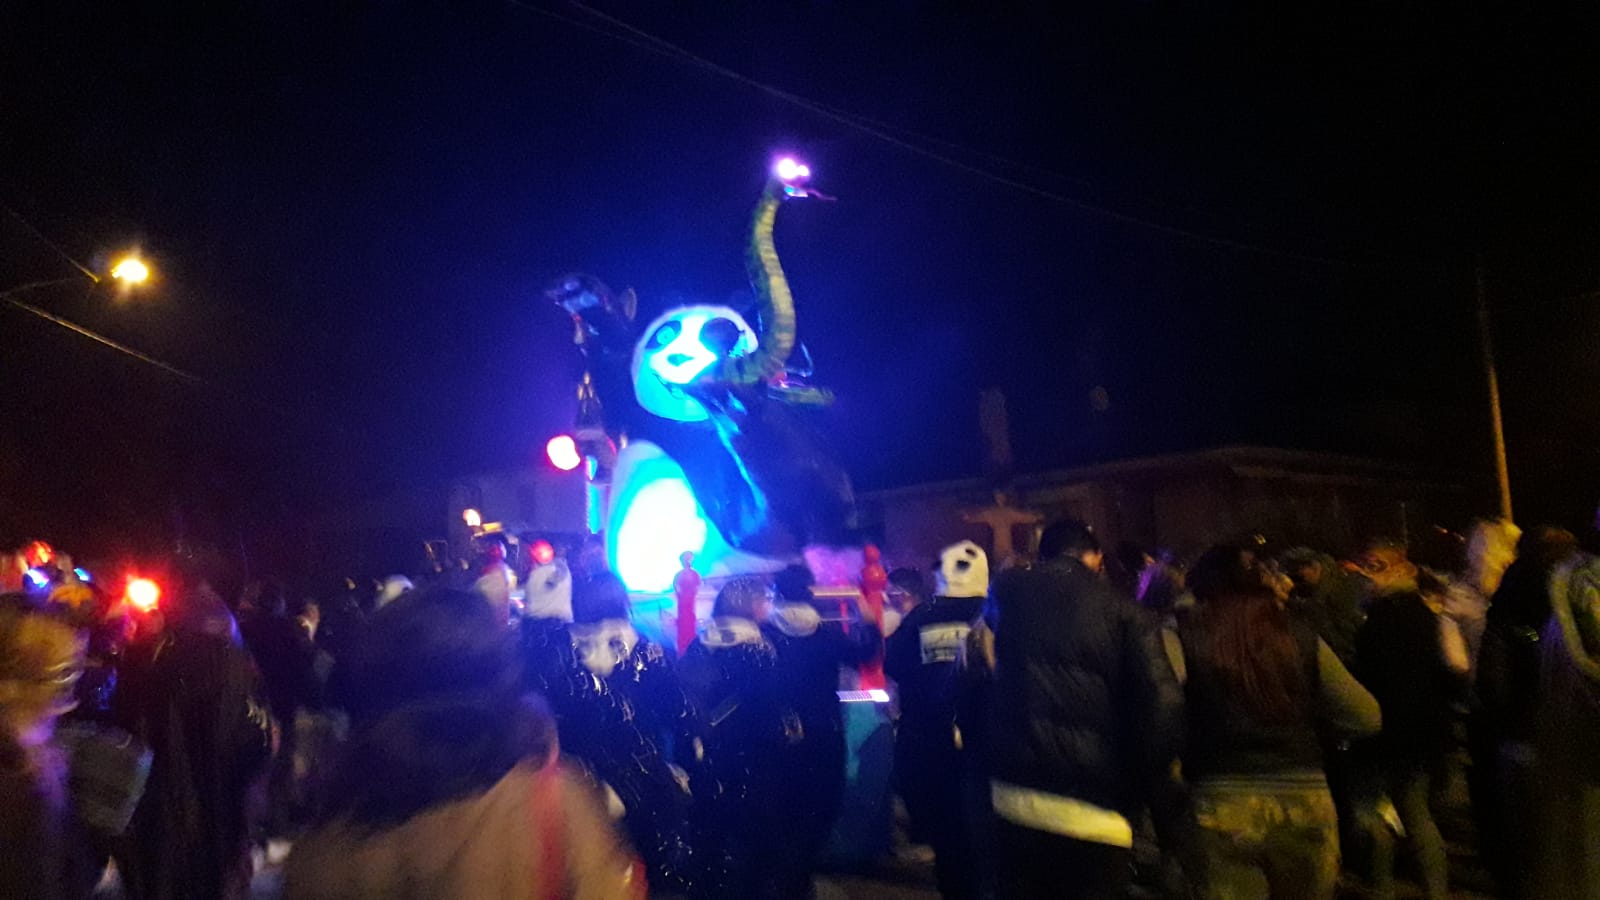 Carnevale 2019 sfilata dei carri Treviglio, Vidalengo e Caravaggio